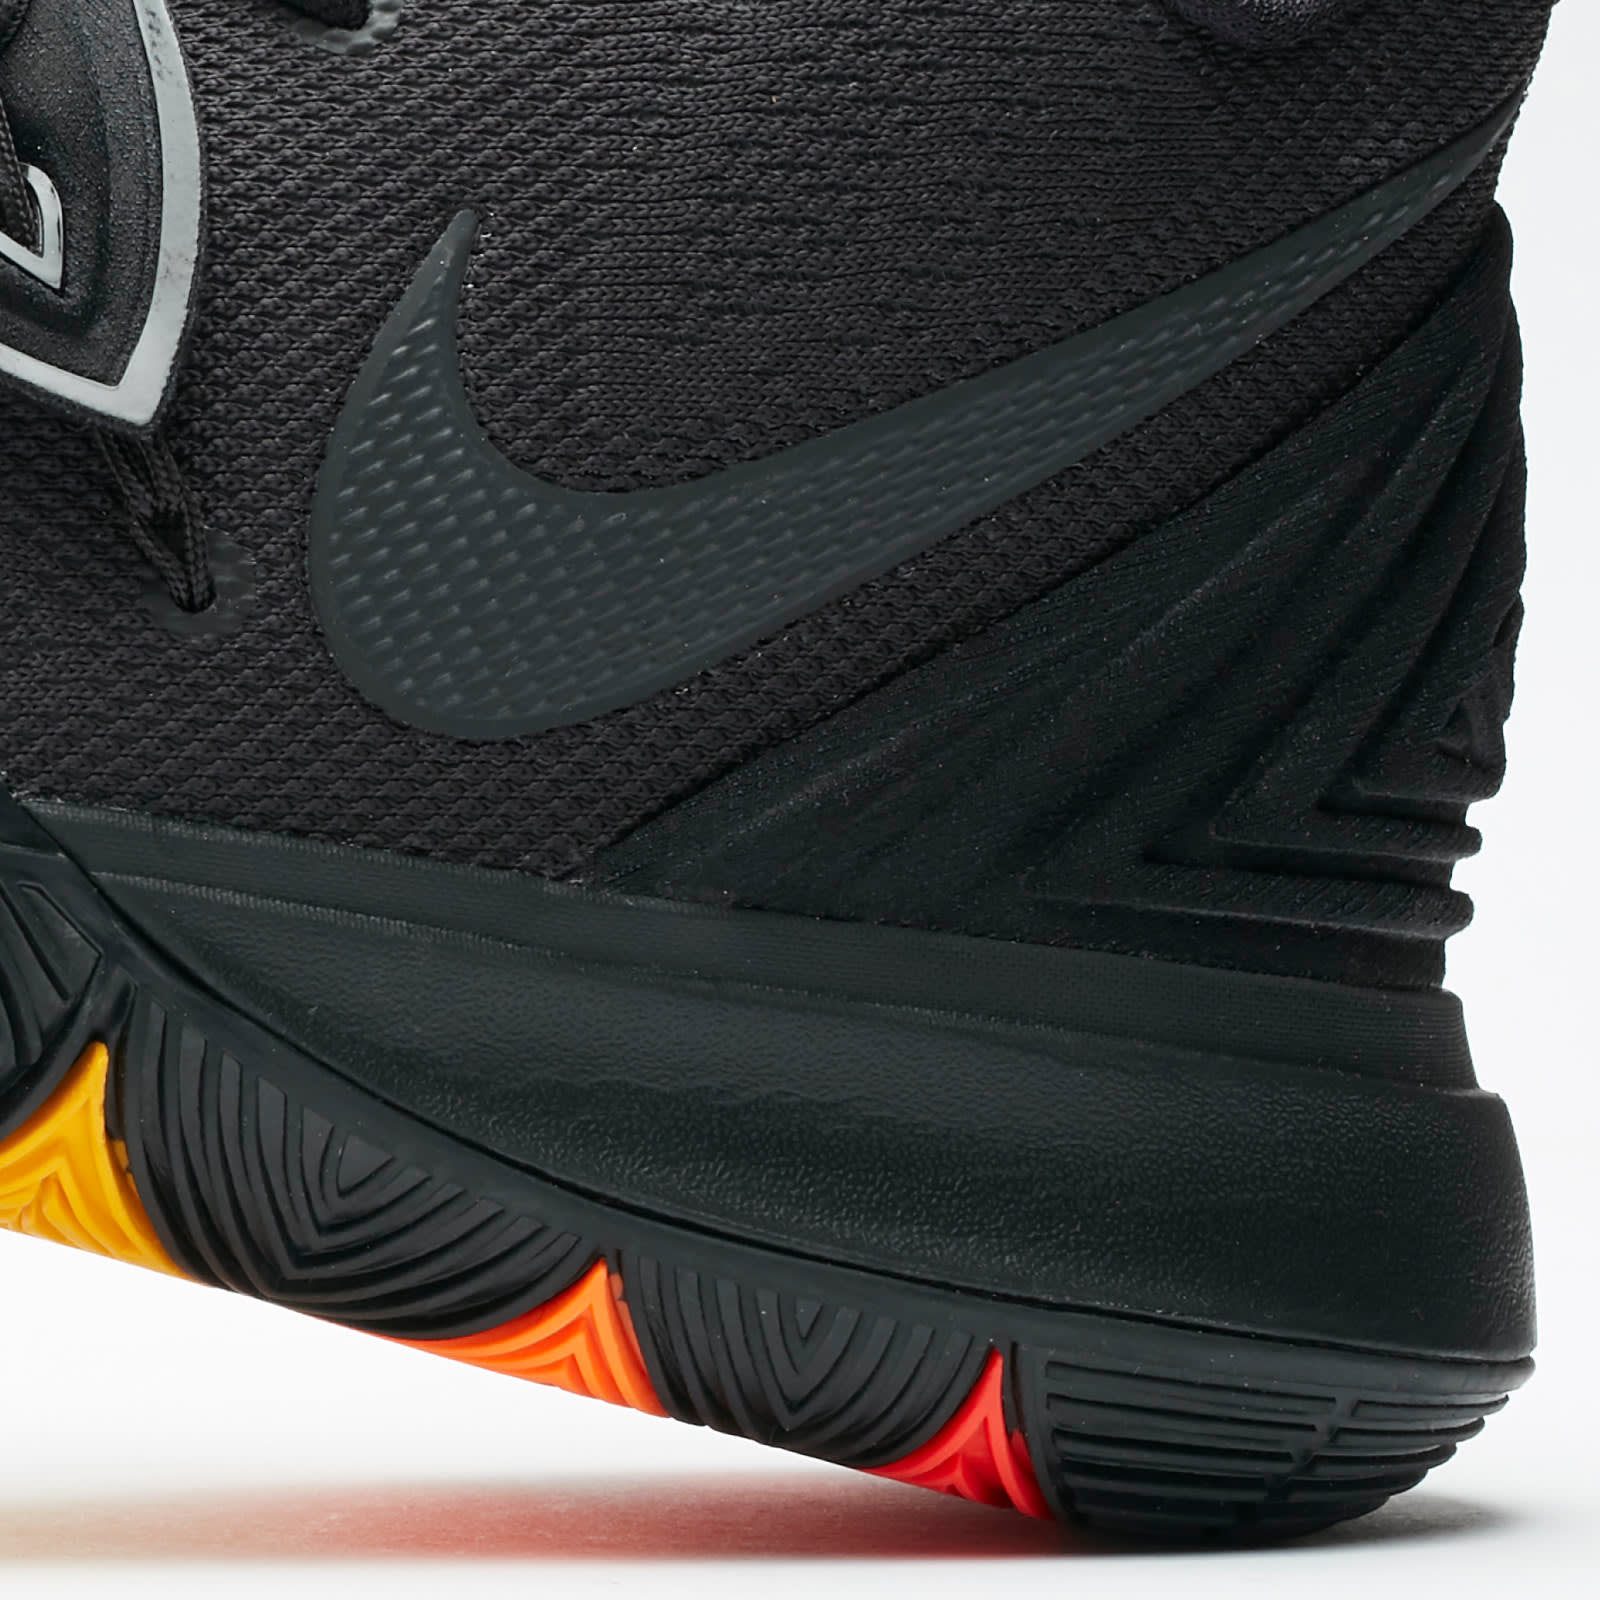 Nike Kyrie 5 Black Rainbow Release Date AO2918-001 Rear Midsole